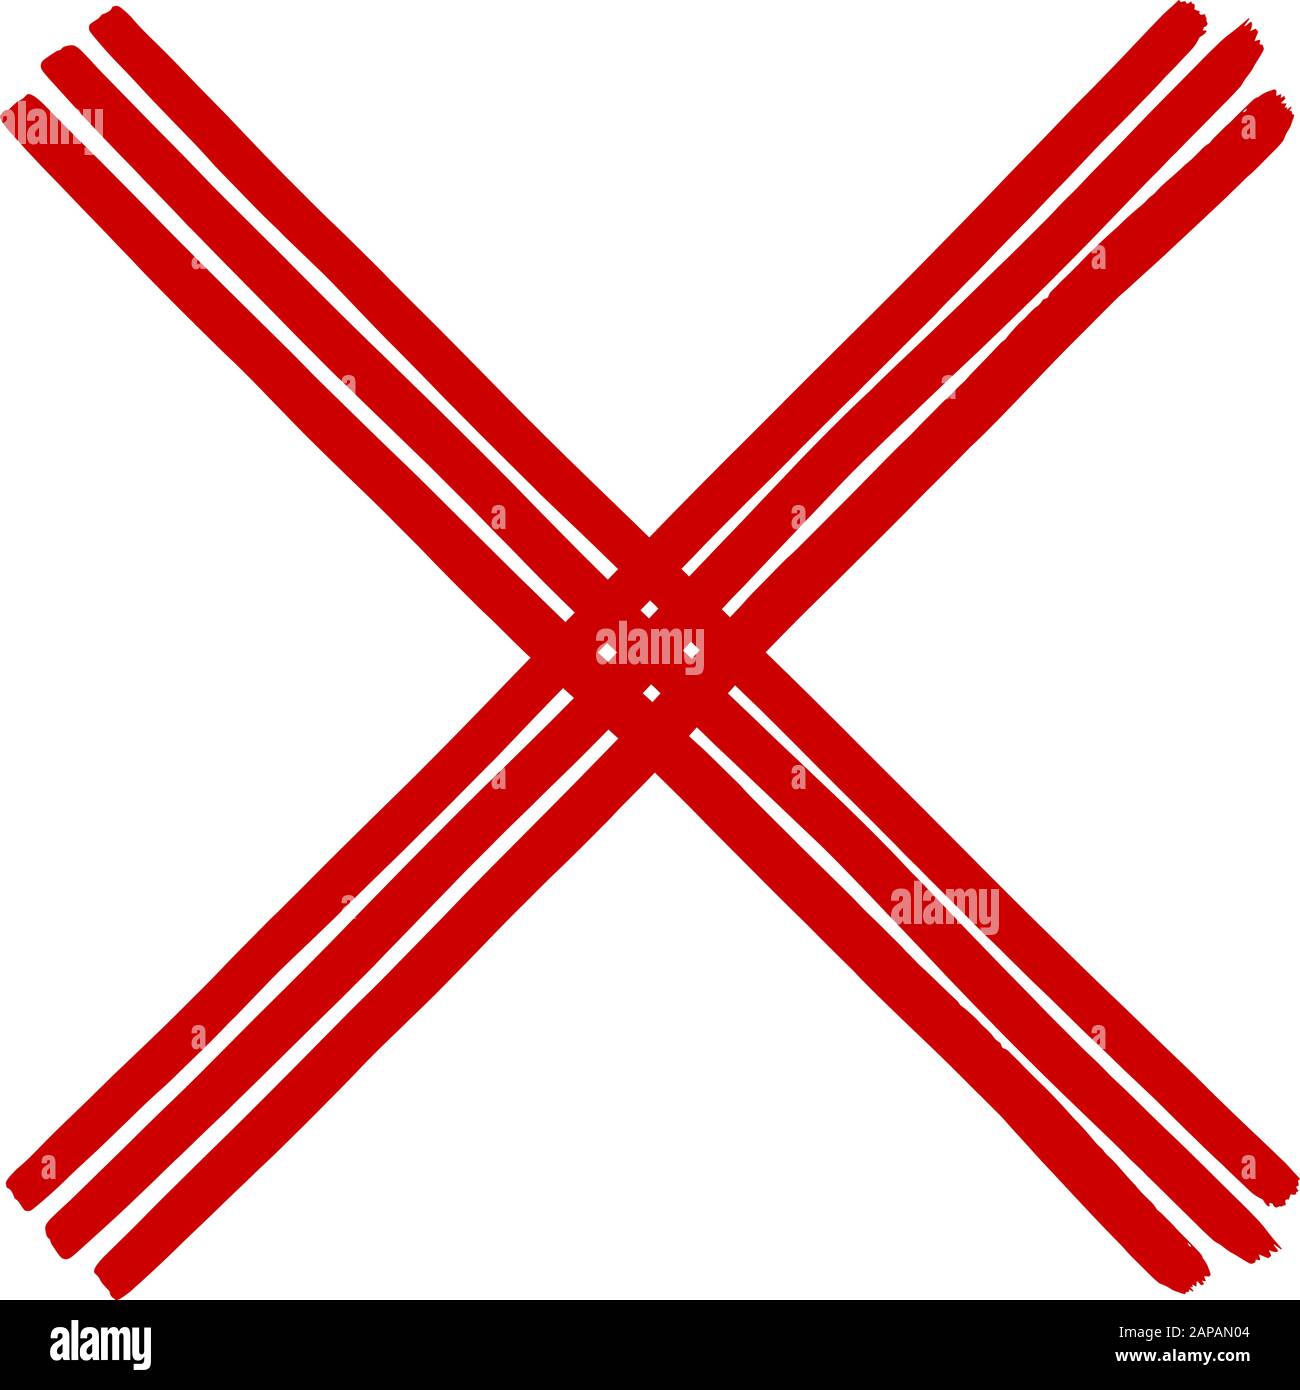 Schmutzige Grunge Hand gezeichnet mit Pinselstrichen Kreuz x Vektorgrafik isoliert auf weißem Hintergrund. Grafikdesign markieren. Das Häkchen im Symbol NO drücken Stock Vektor